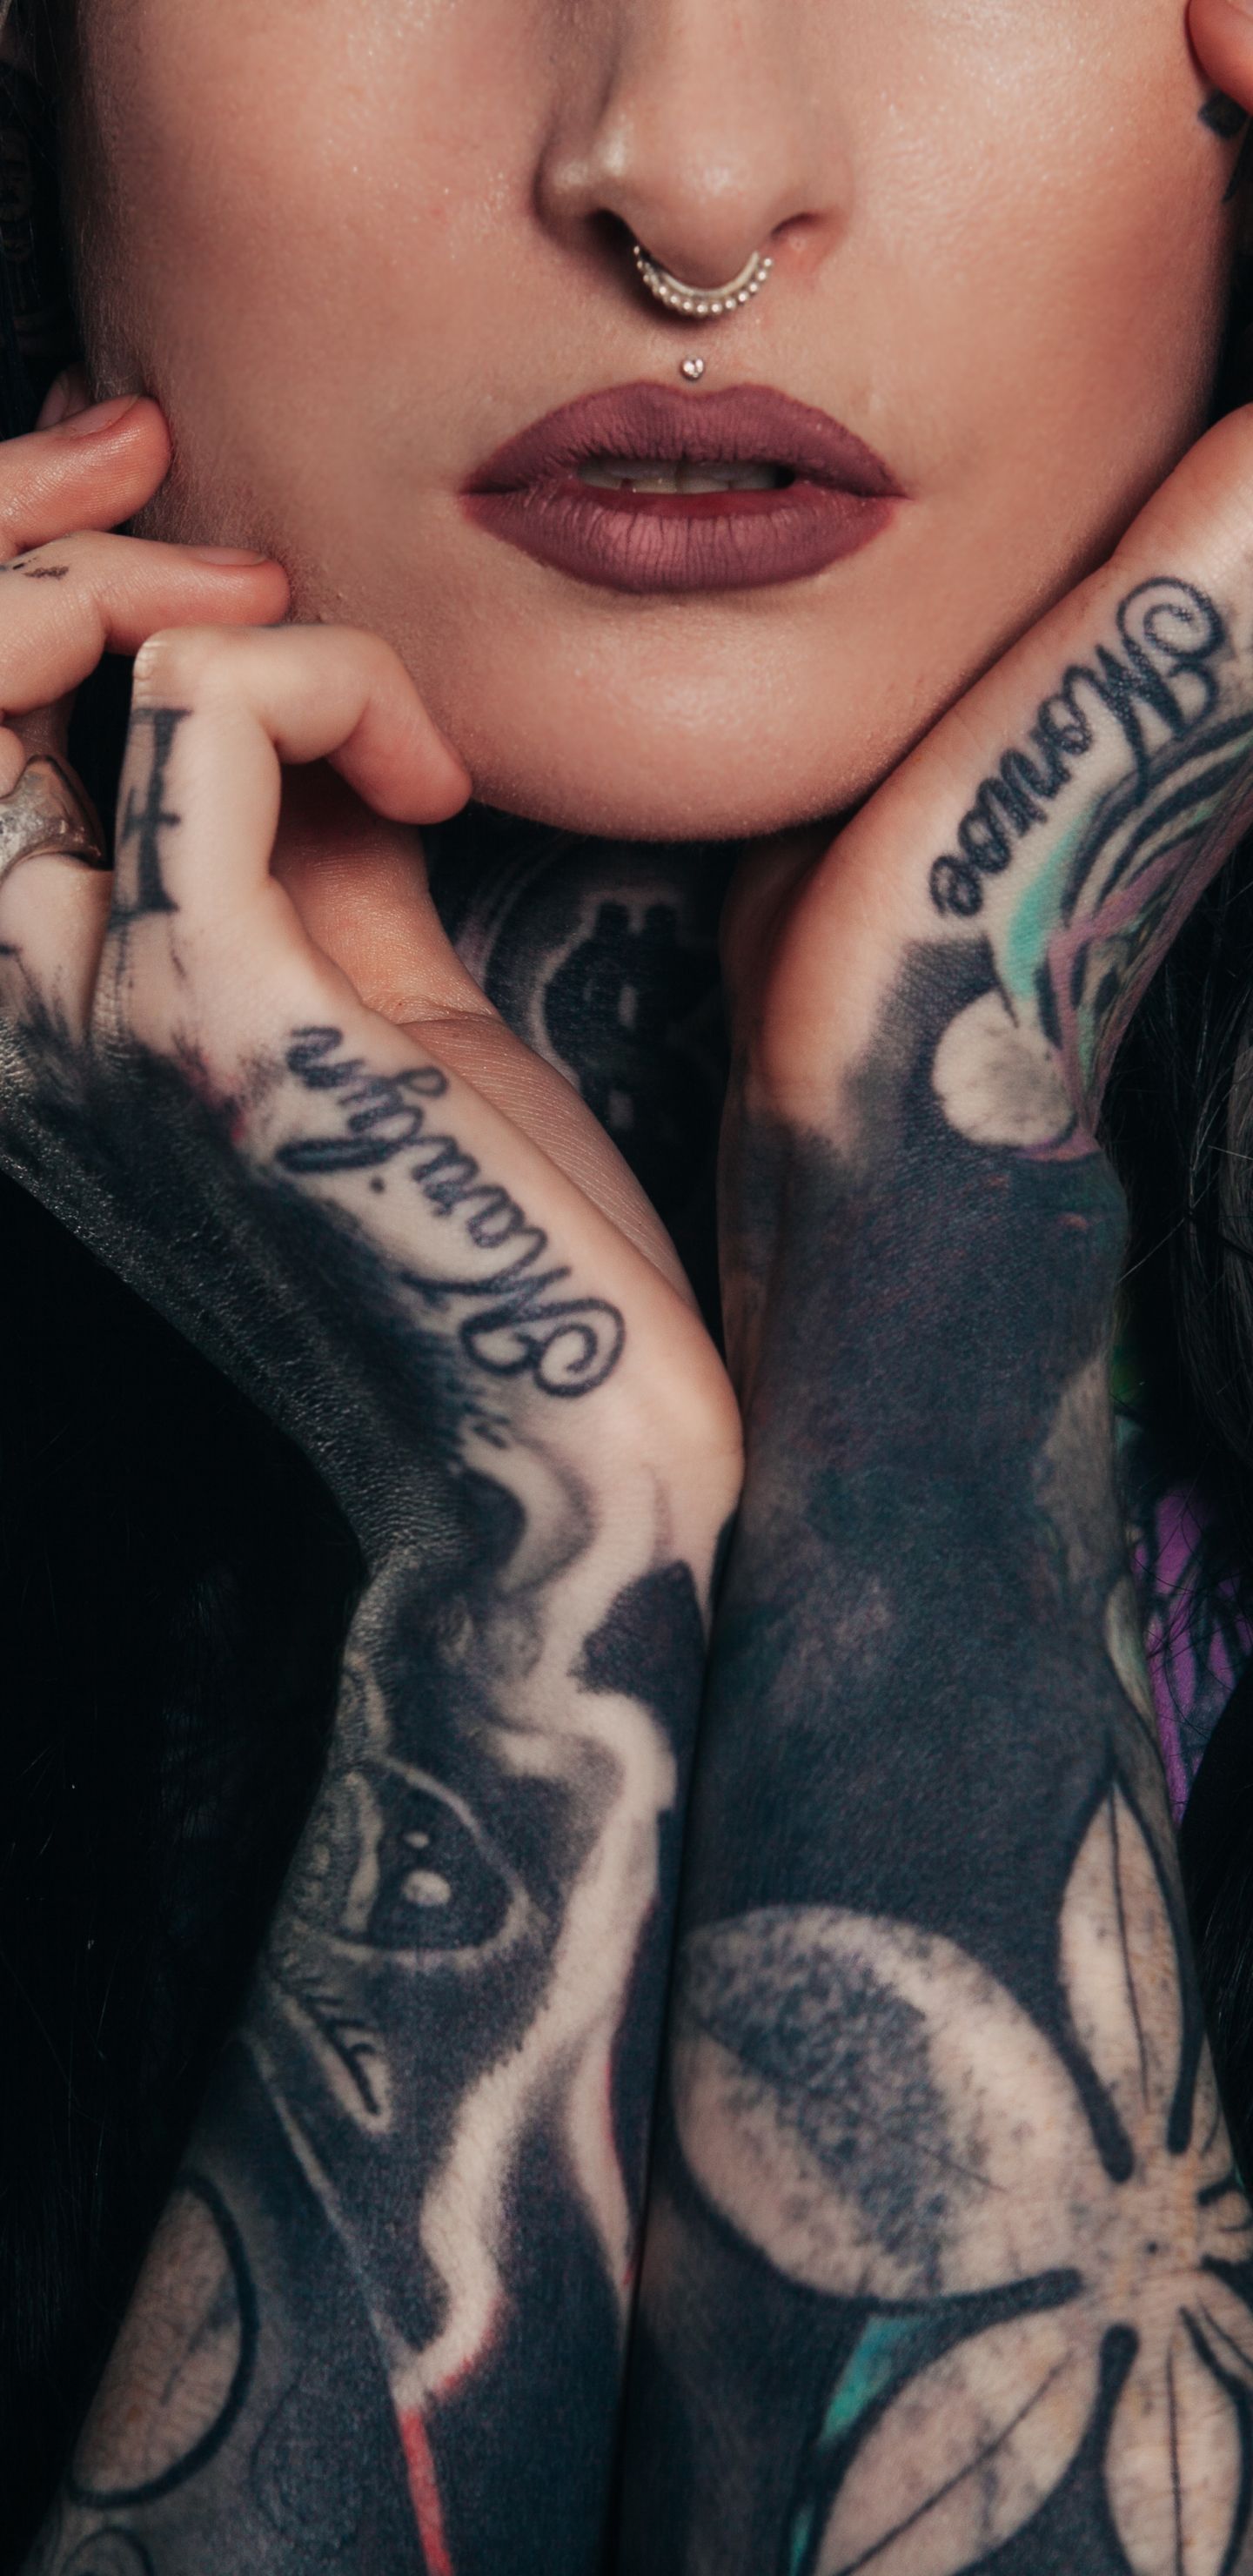 Tattooed Women Wallpaper